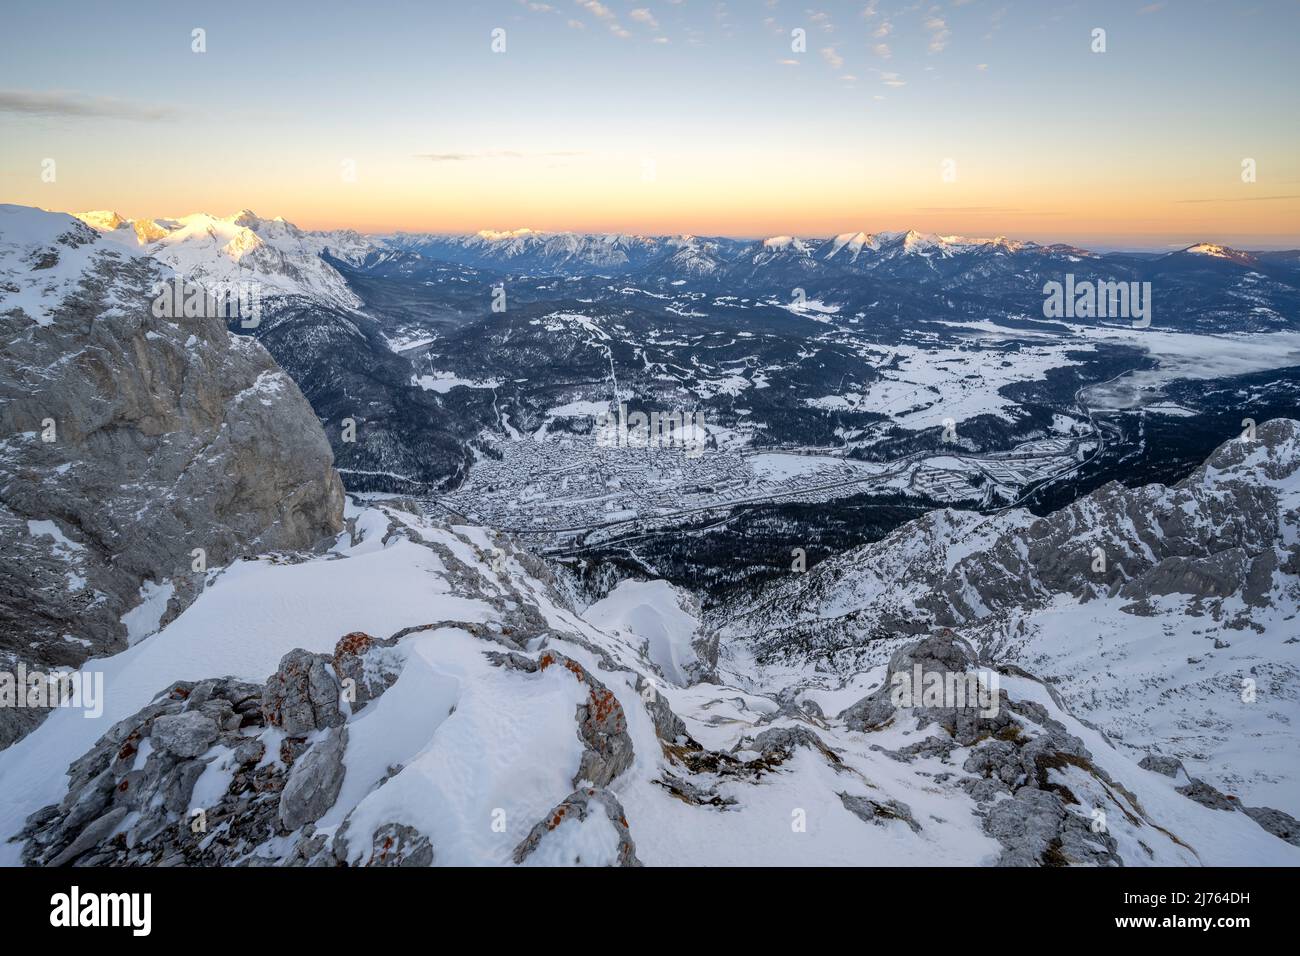 Vue de l'ouest du Karwendel, sur les rochers et la neige ind e Werdenfelser Land en hiver, avec la ville de marché Mittenwald, le Kranzberg, les Prealps bavarois et vers Garmisch-Partenkirchen, avec le Zugspitze en arrière-plan, tandis que les couleurs douces de l'aube sont dans le ciel. Banque D'Images